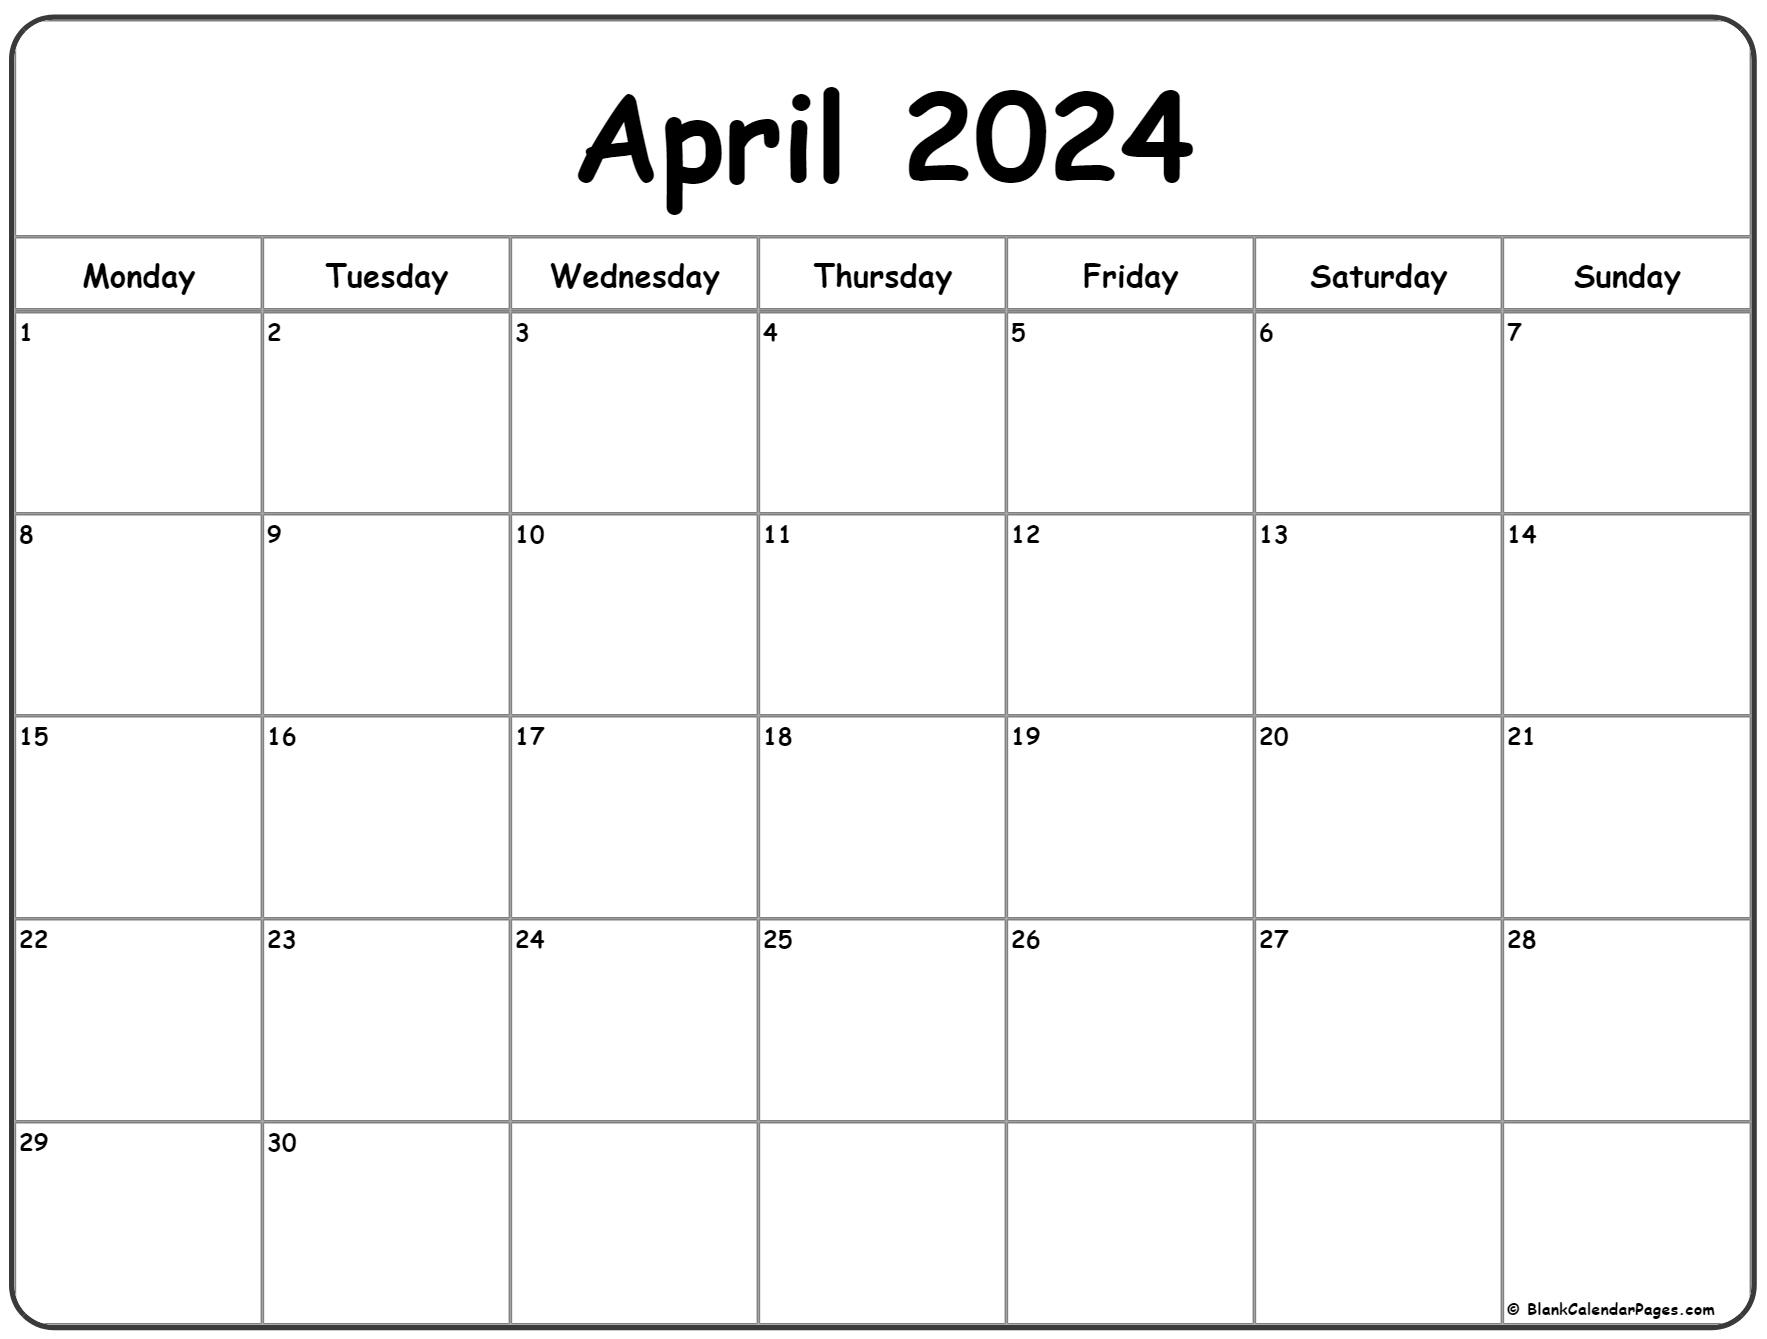 April 2024 Monday Calendar | Monday To Sunday regarding April 2024 Blank Calendar Template